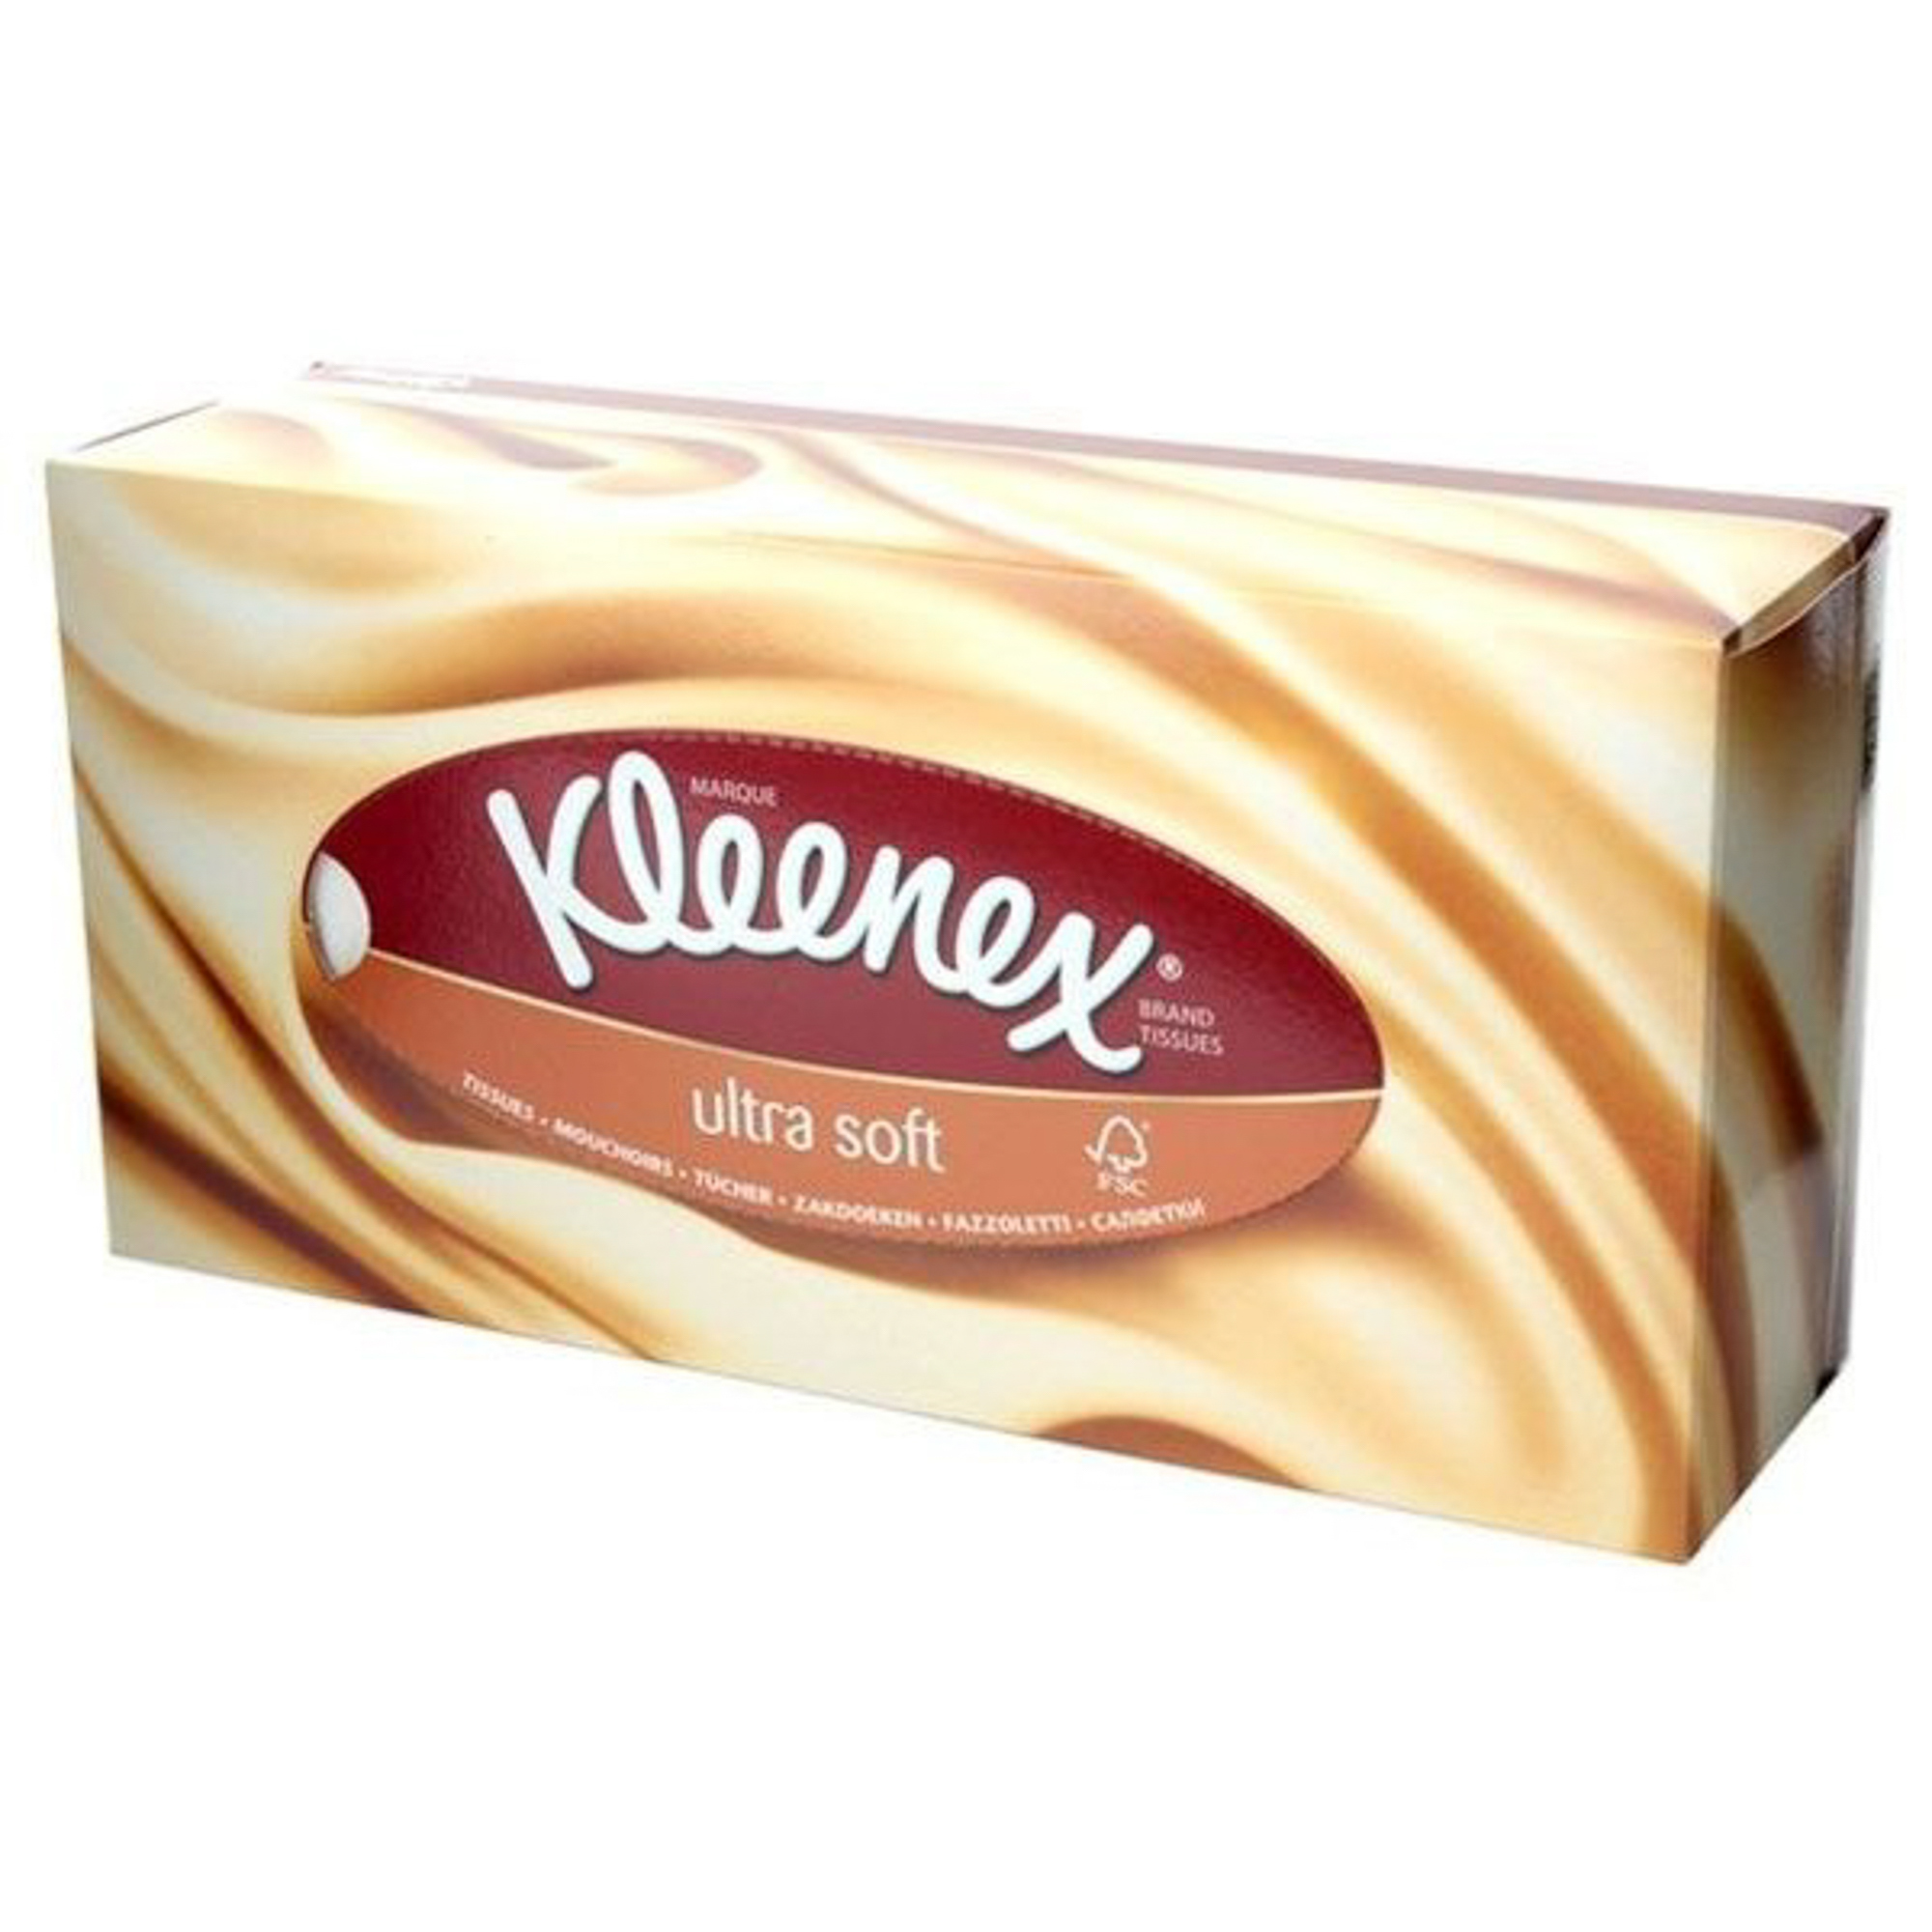 Салфетки Kleenex Ultra Soft 56 шт. (3213.200. 4197) салфетки для маникюра мягкие 560 шт 6 × 4 см